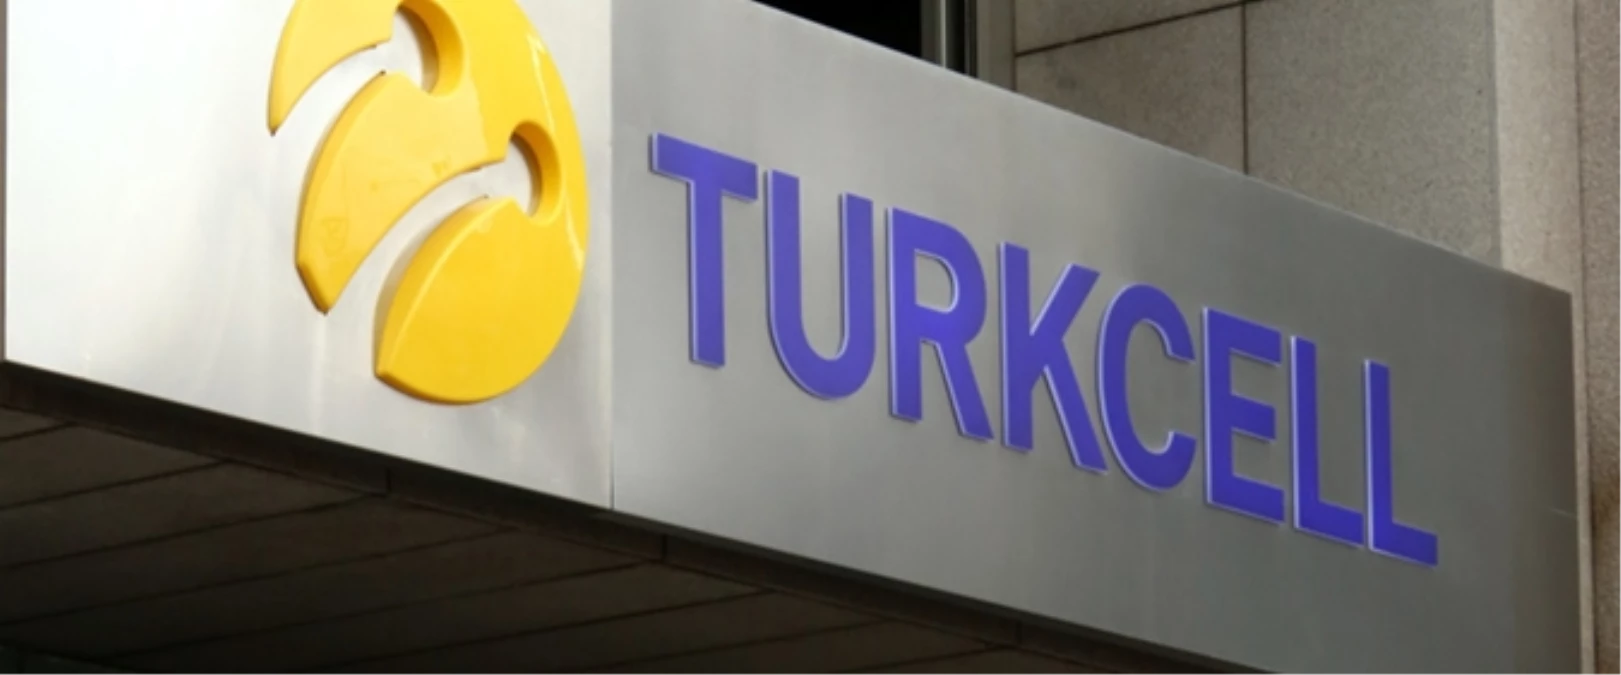 Turkcell Tarihinin En Yüksek Çeyrek Gelirine Ulaştı